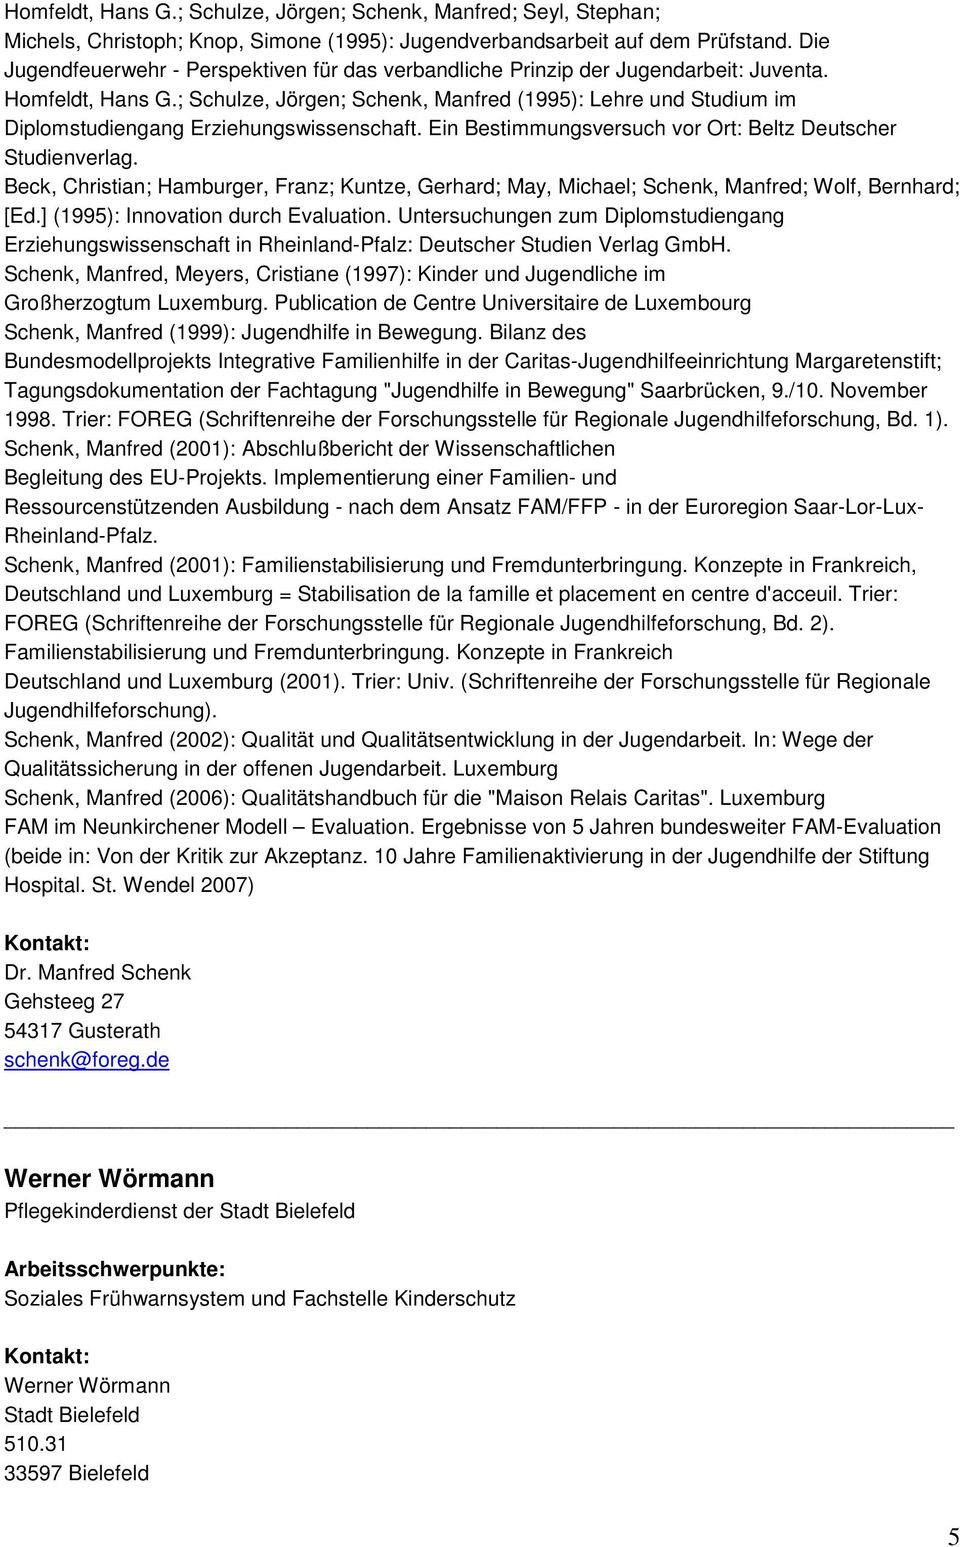 ; Schulze, Jörgen; Schenk, Manfred (1995): Lehre und Studium im Diplomstudiengang Erziehungswissenschaft. Ein Bestimmungsversuch vor Ort: Beltz Deutscher Studienverlag.